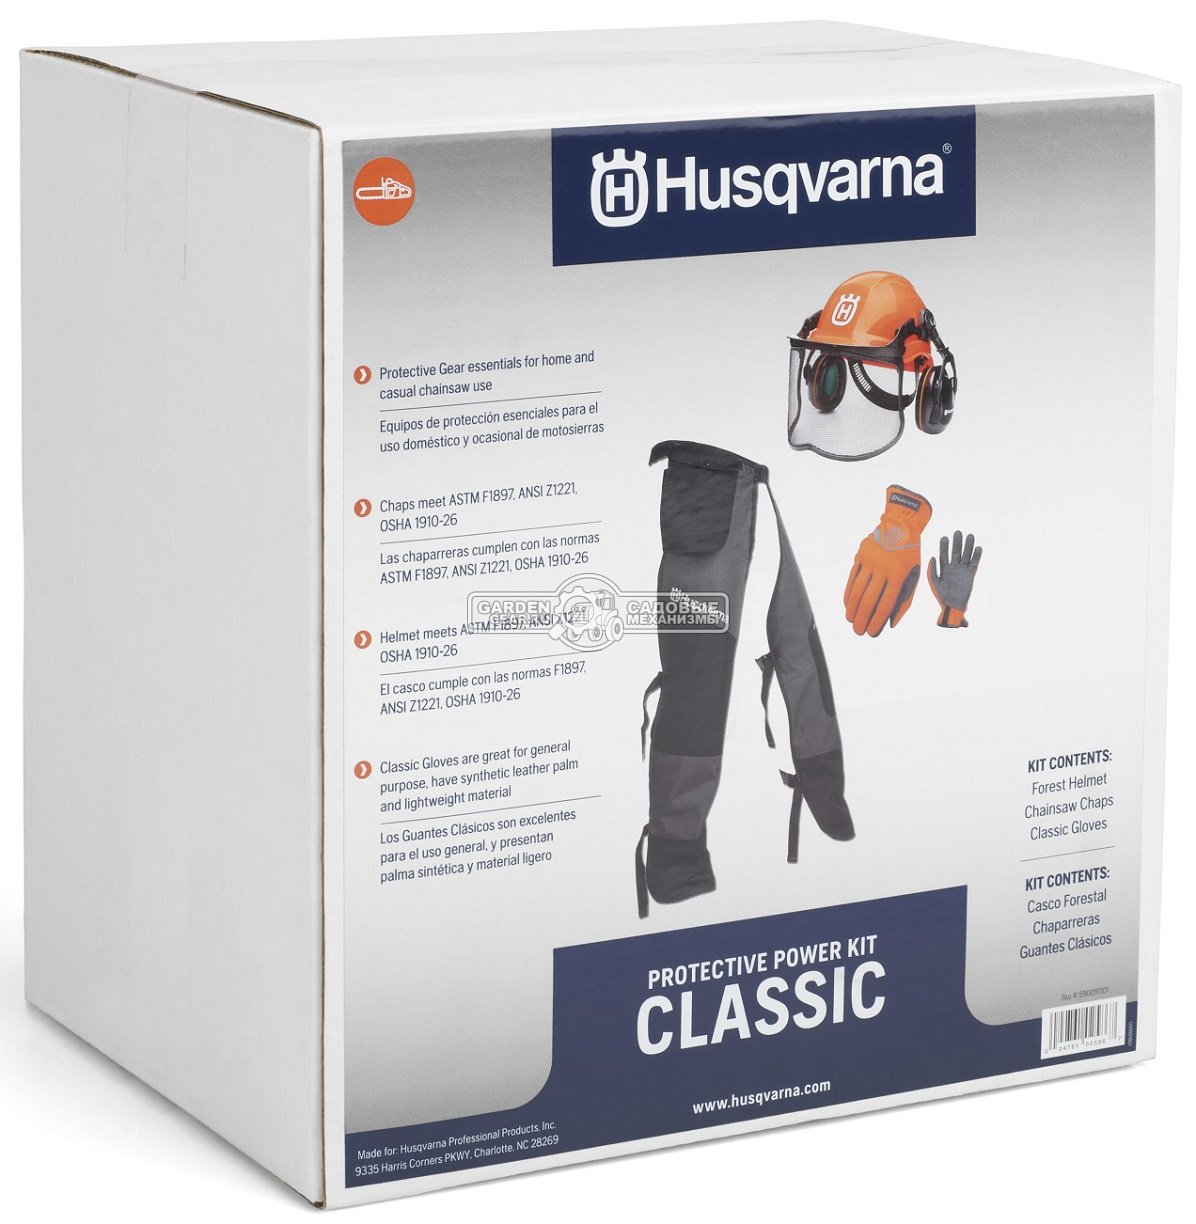 Комплект защитной одежды Husqvarna шлем Classic, штаны-чехол Classic и перчатки Classic с защитой от порезов бензопилой